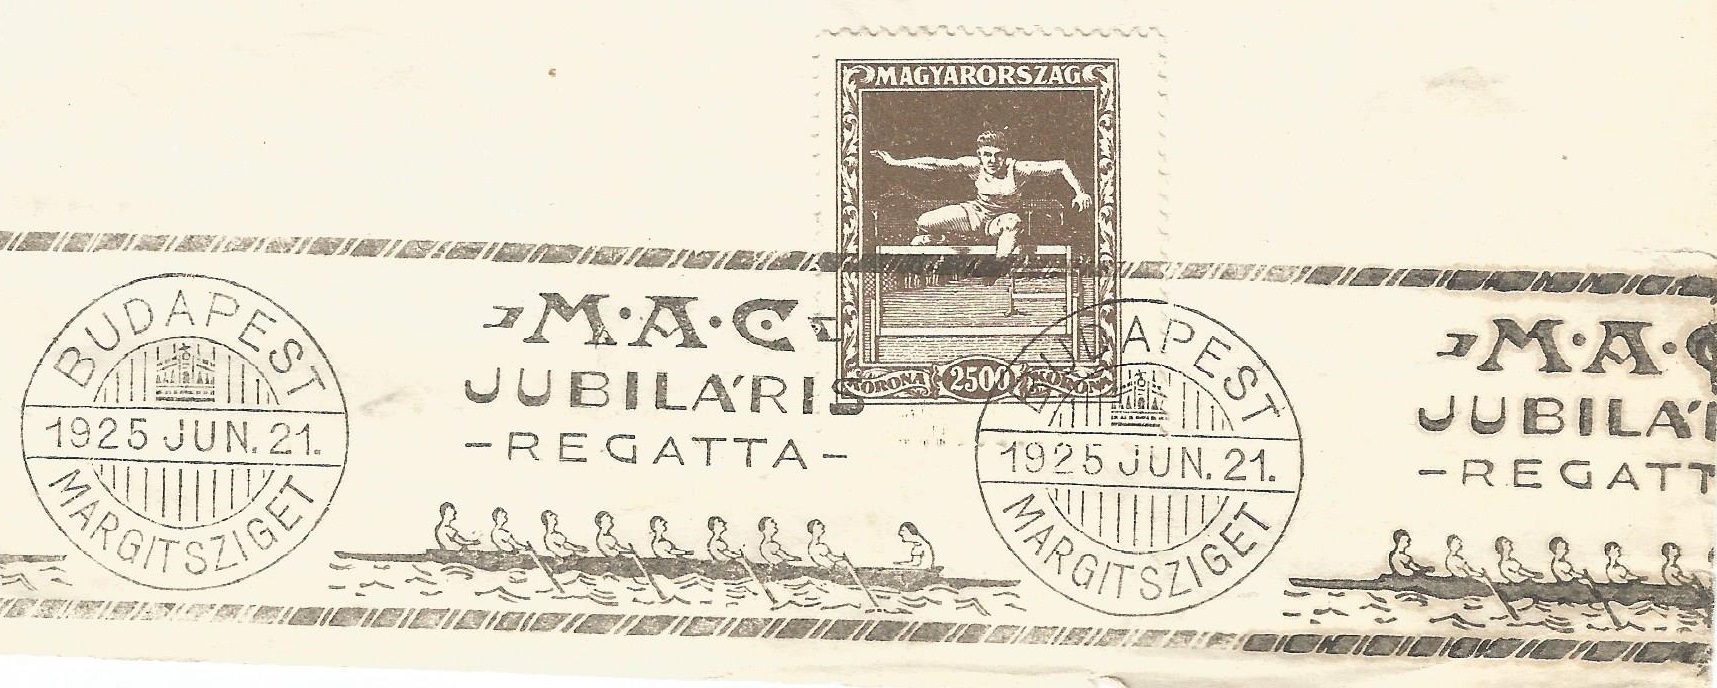 PM HUN 1925 June 21st Budapest MAC Jubilaris Regatta on 2500 K. stamp